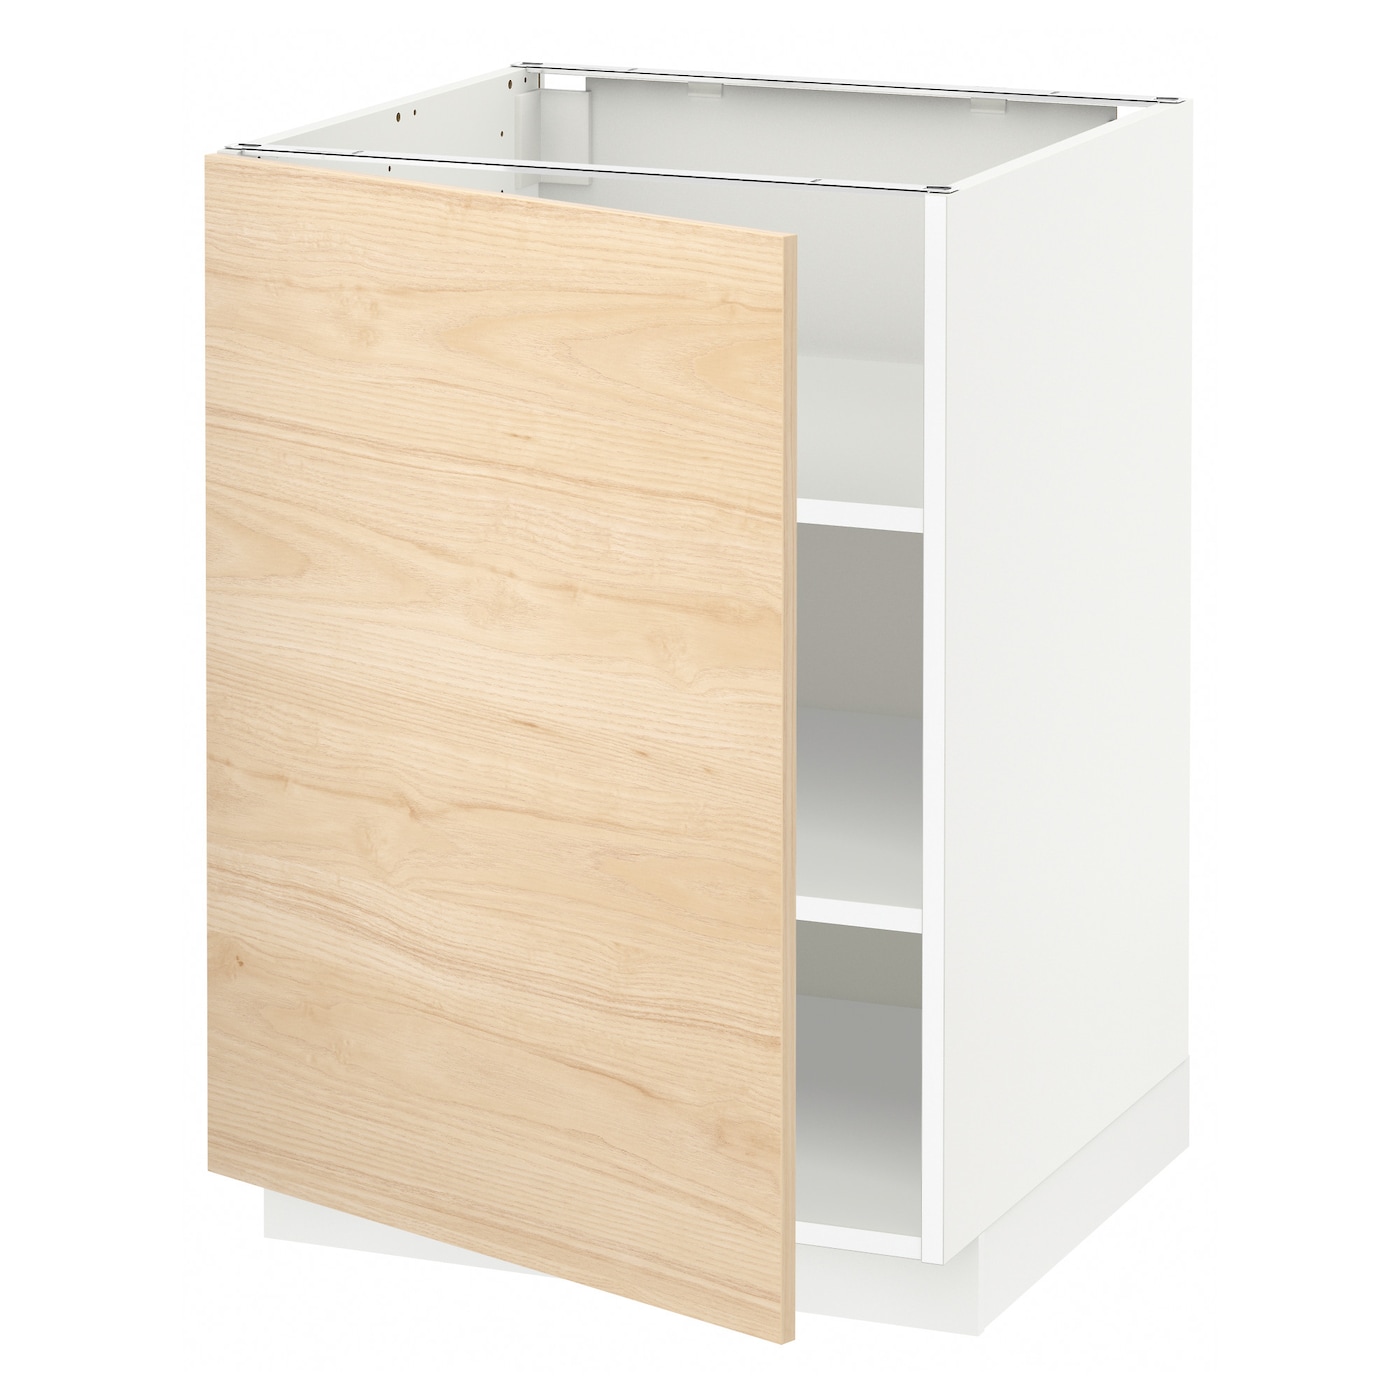 Напольный шкаф с полками - IKEA METOD, 60х60 см, белый/под беленый дуб МЕТОД ИКЕА